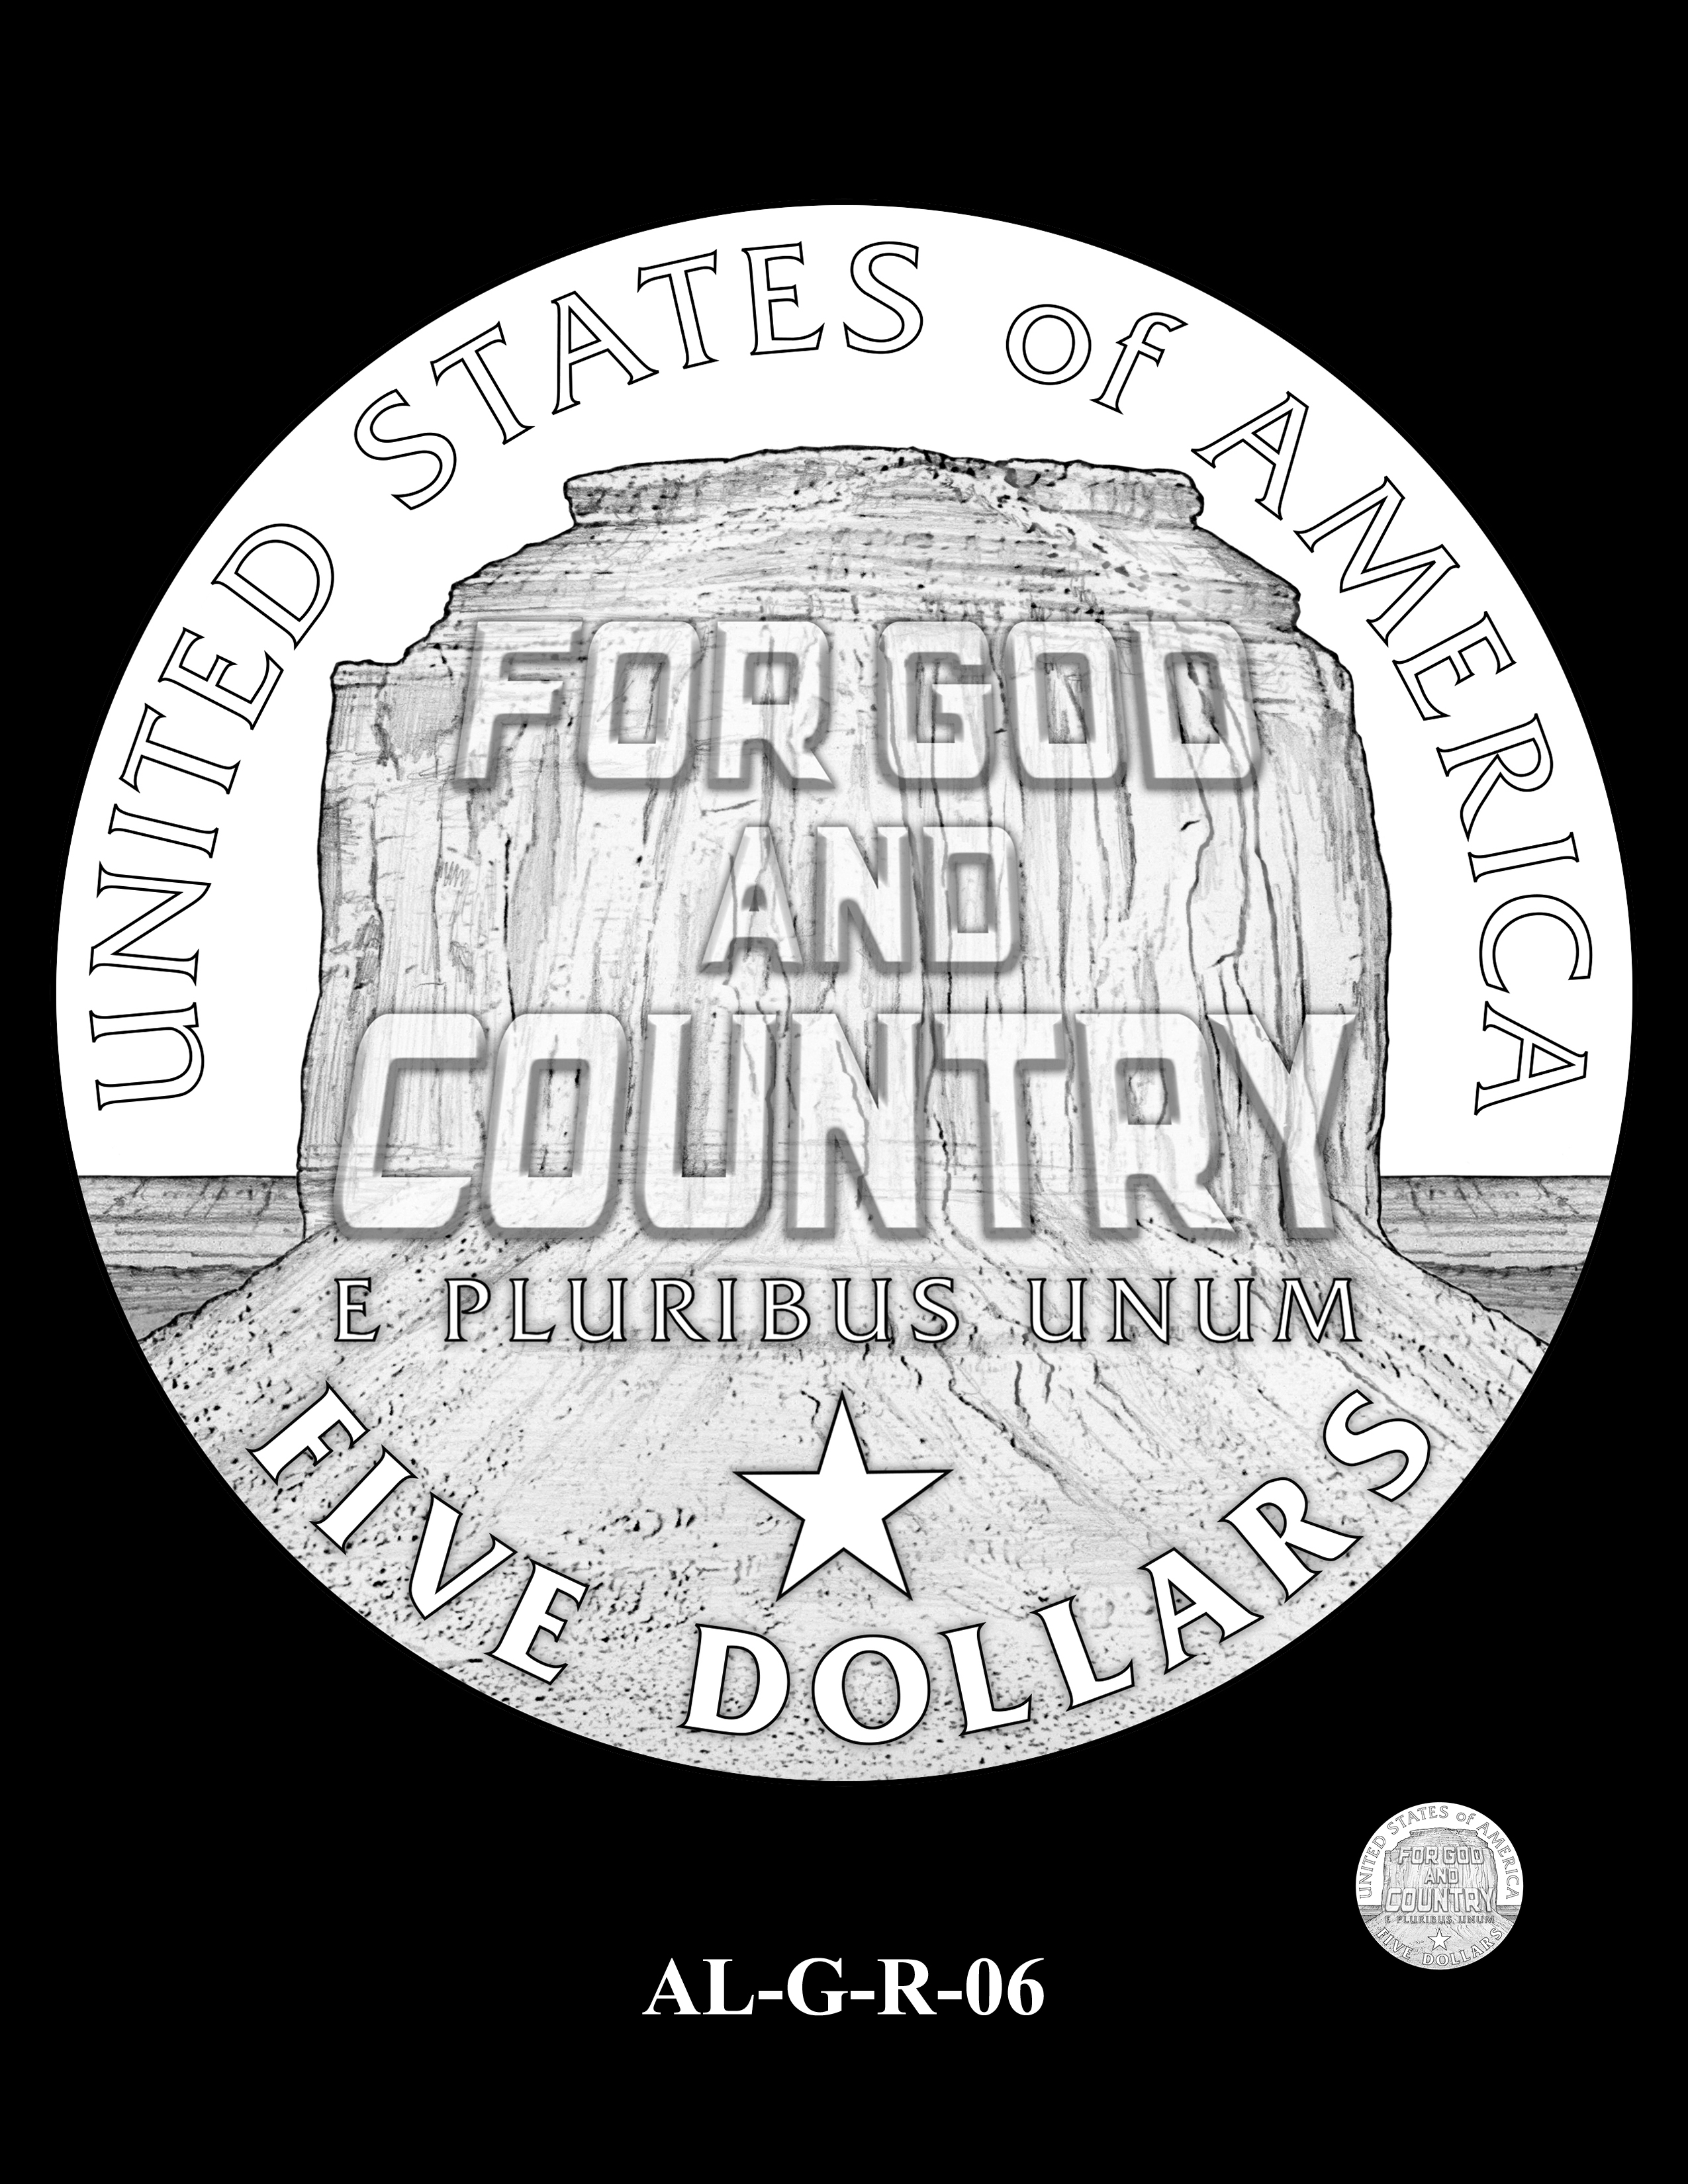 AL-G-R-06 -- 2019 American Legion 100th Anniversary Commemorative Coin Program - Gold Reverse